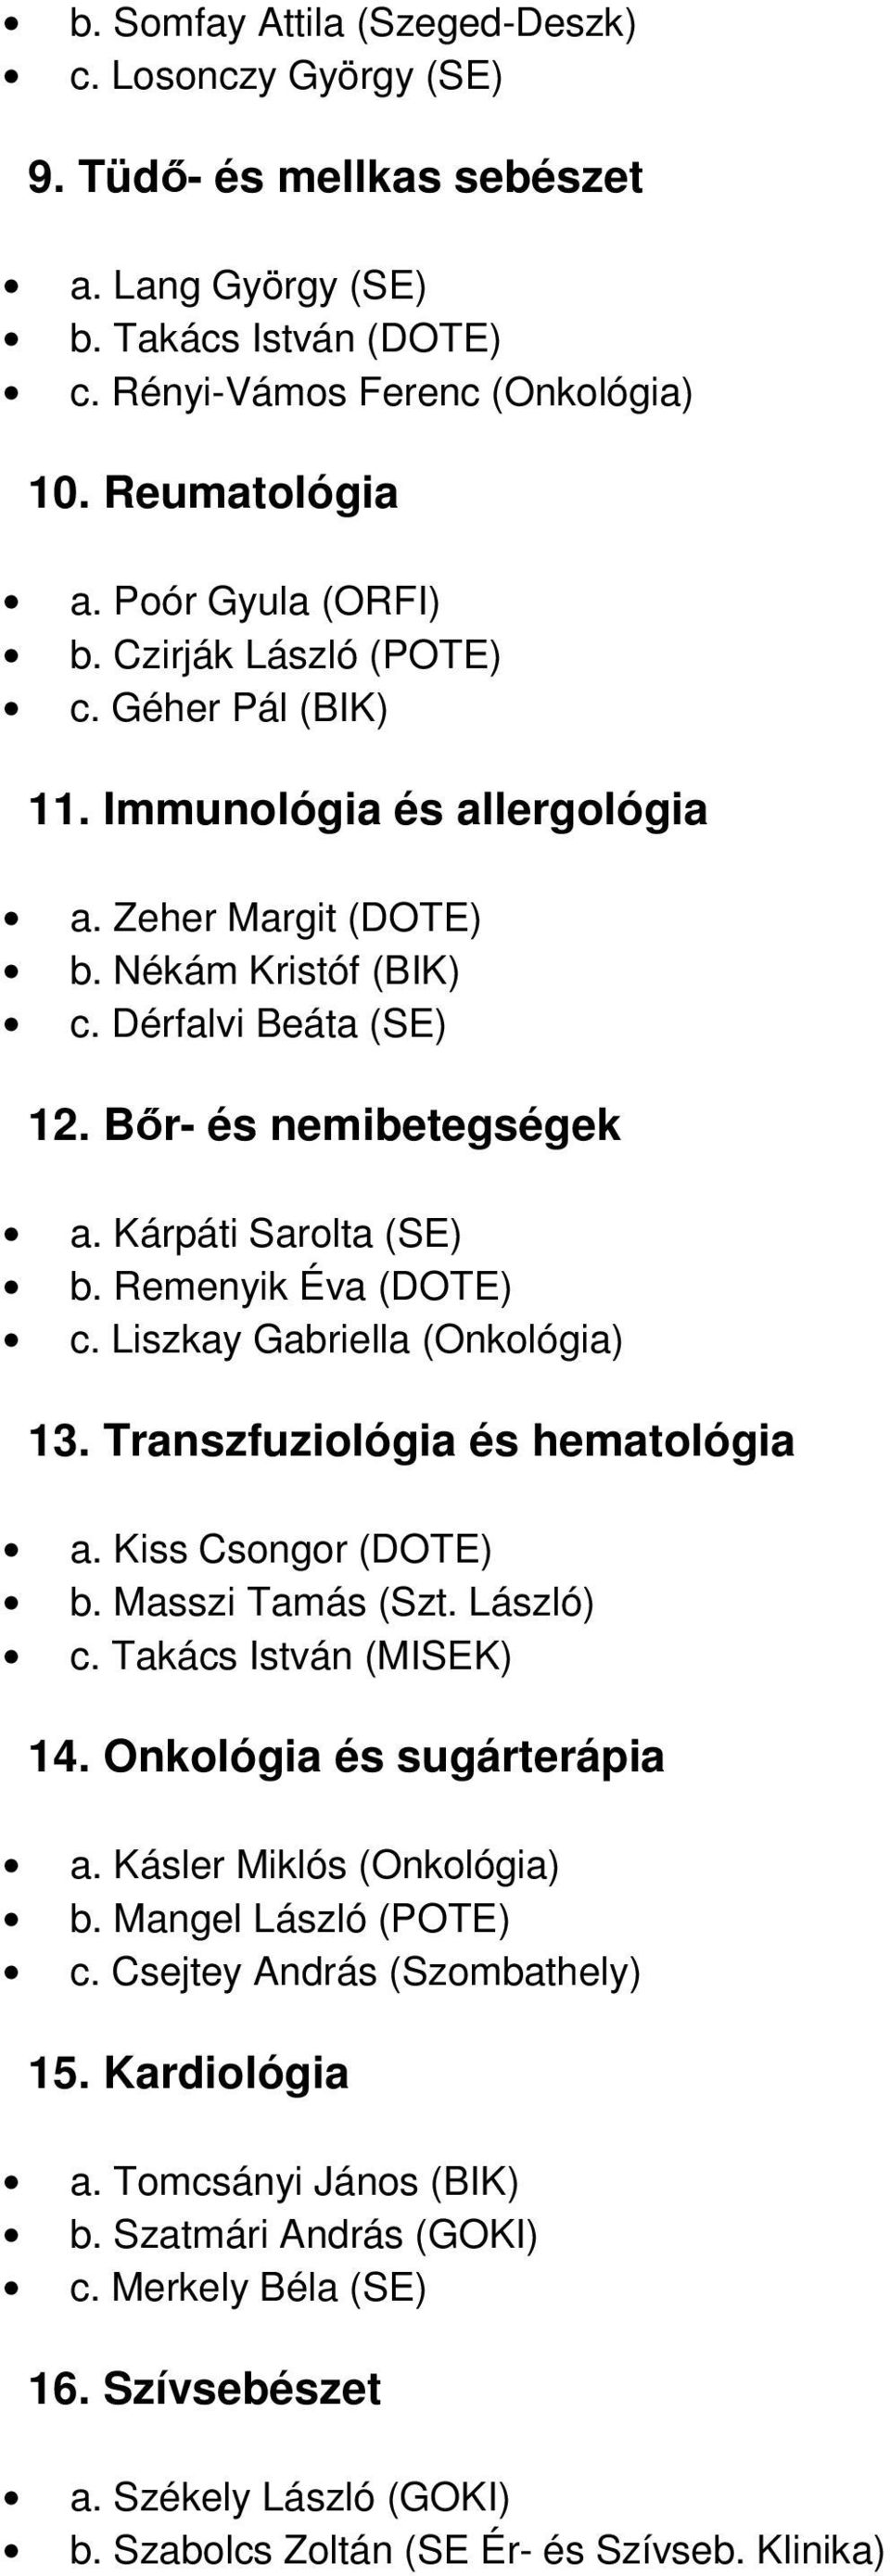 Kárpáti Sarolta (SE) b. Remenyik Éva (DOTE) c. Liszkay Gabriella (Onkológia) 13. Transzfuziológia és hematológia a. Kiss Csongor (DOTE) b. Masszi Tamás (Szt. László) c. Takács István (MISEK) 14.